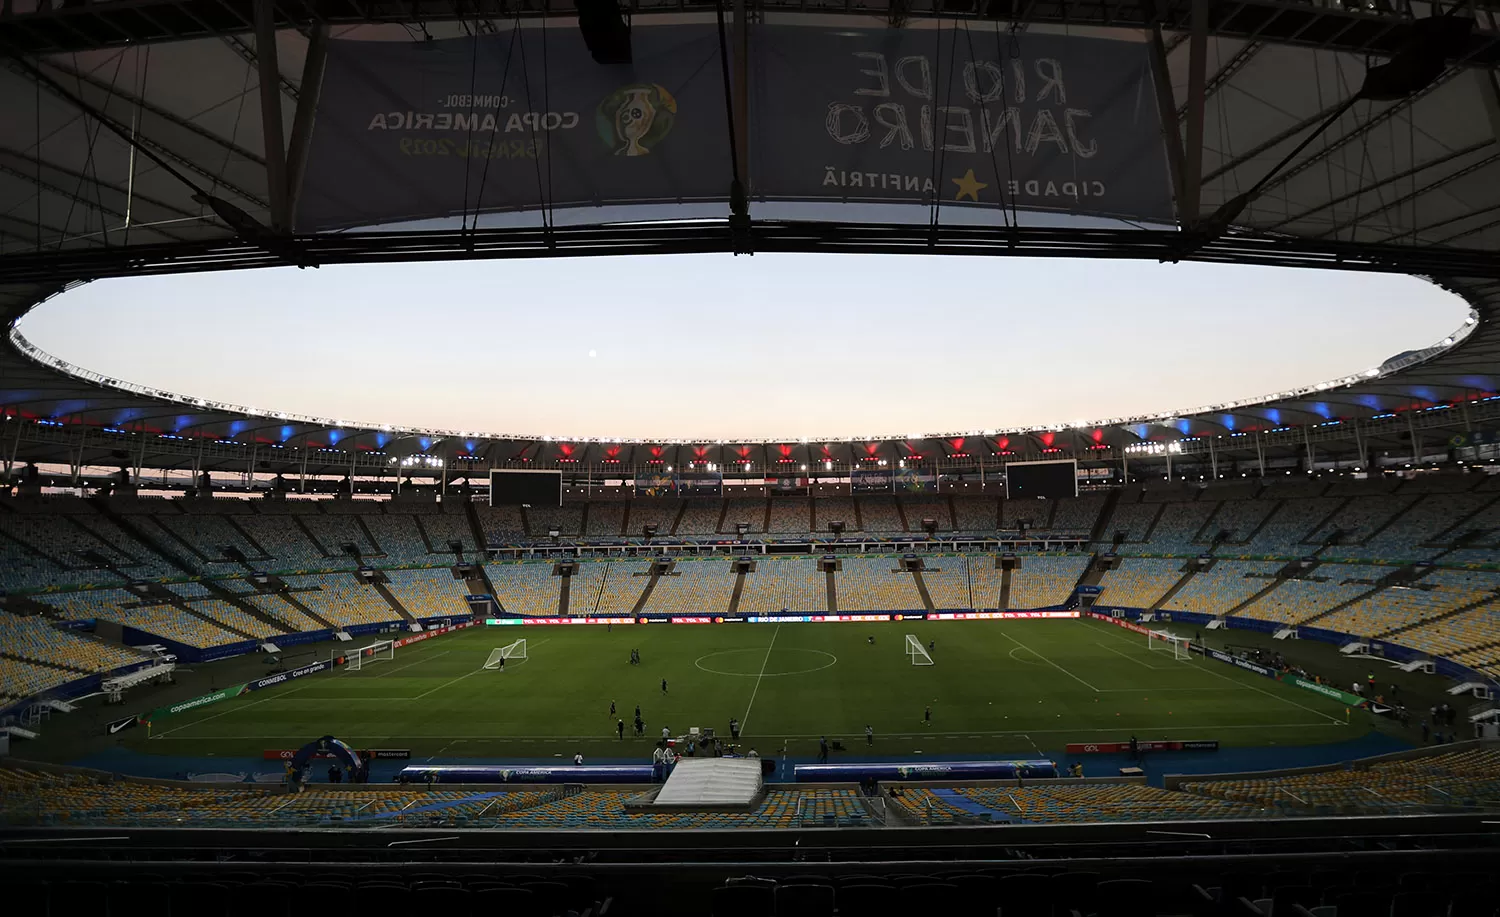 ESCENARIO. El estadio Maracaná, el más grande de Brasil, alojaría la final de la Copa América. Allí se jugó la definición de 2019, que ganó el seleccionado local.